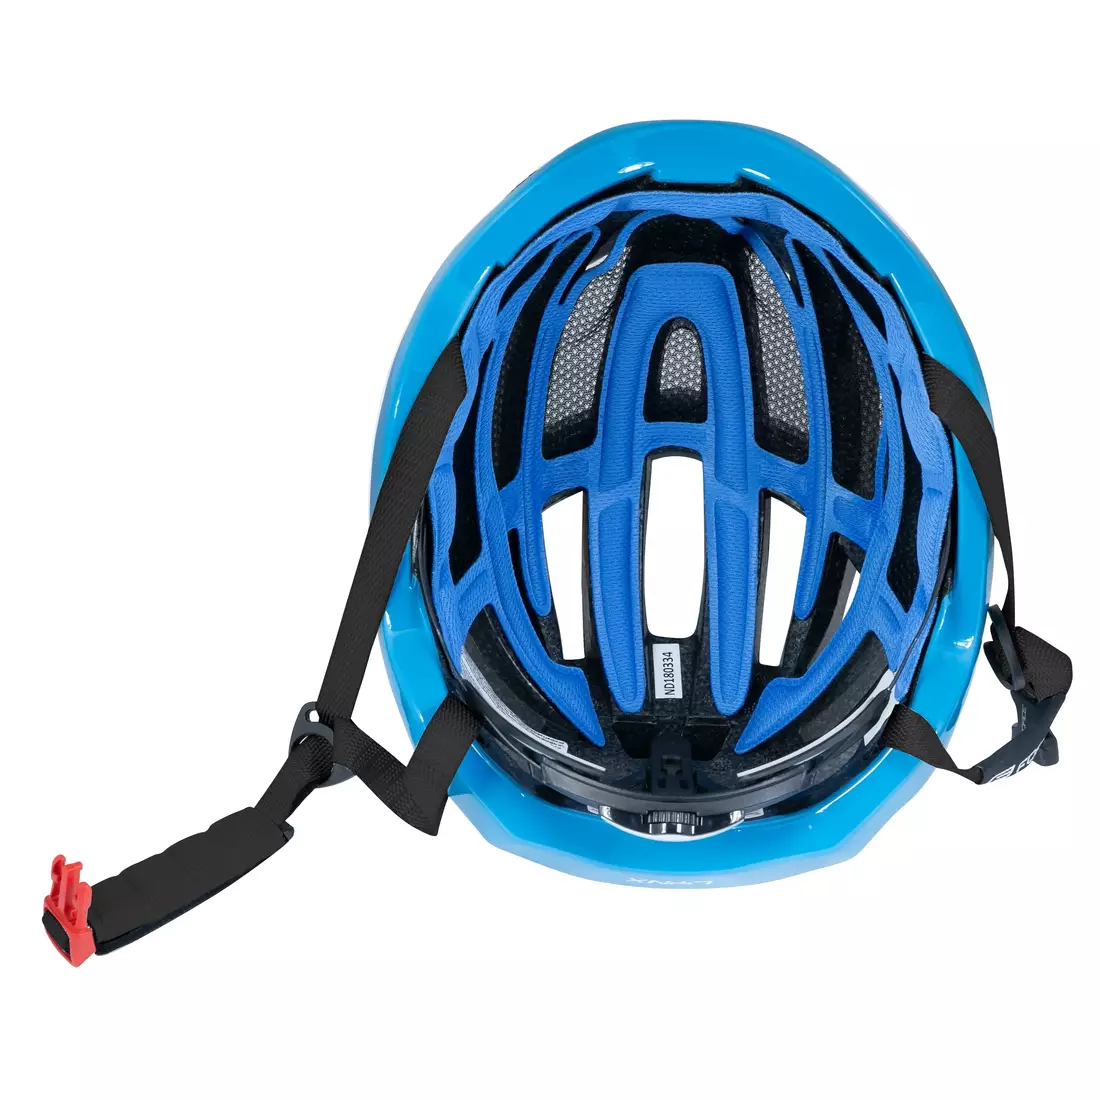 FORCE LYNX Bicycle helmet black/blue